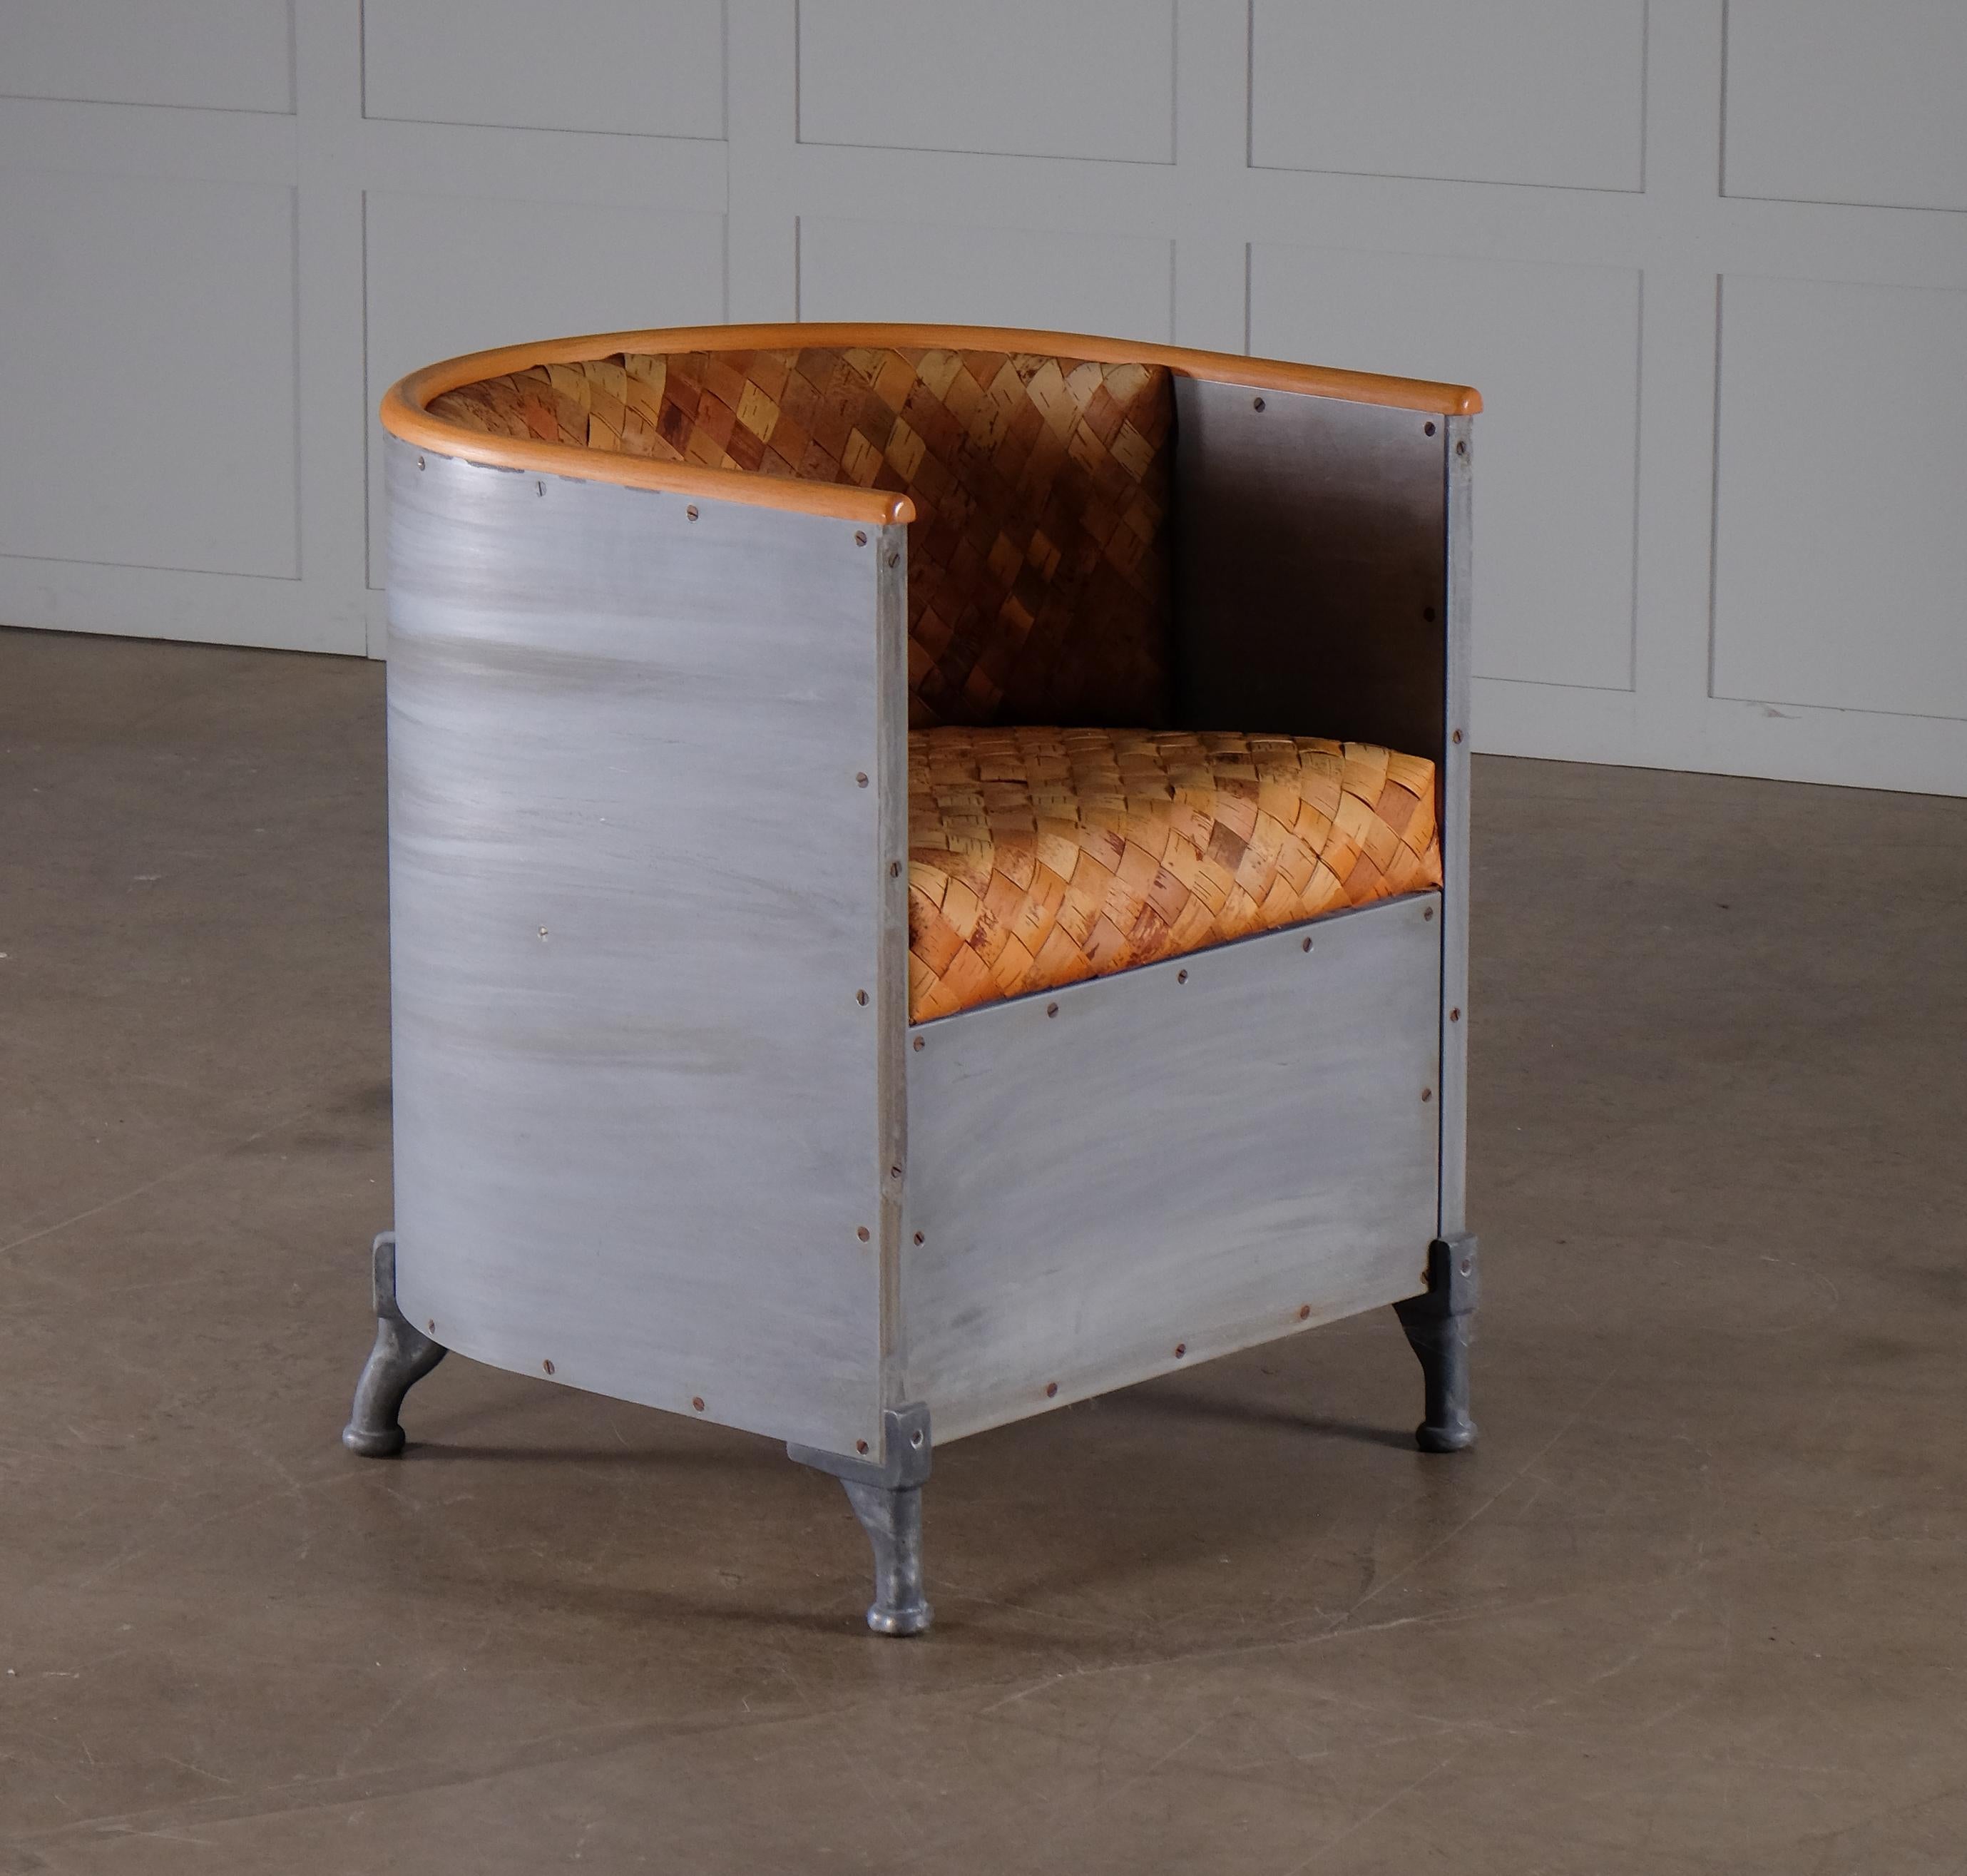 Chaise très rare de Mats Theselius produite par Källemo en 1990 dans une édition limitée à 50 chaises, cet exemple est le numéro 3.
Aluminium, Beeche, assise et dossier garnis d'écorce de bouleau tressée, en très bon état.

Fabriqué à 50 exemplaires